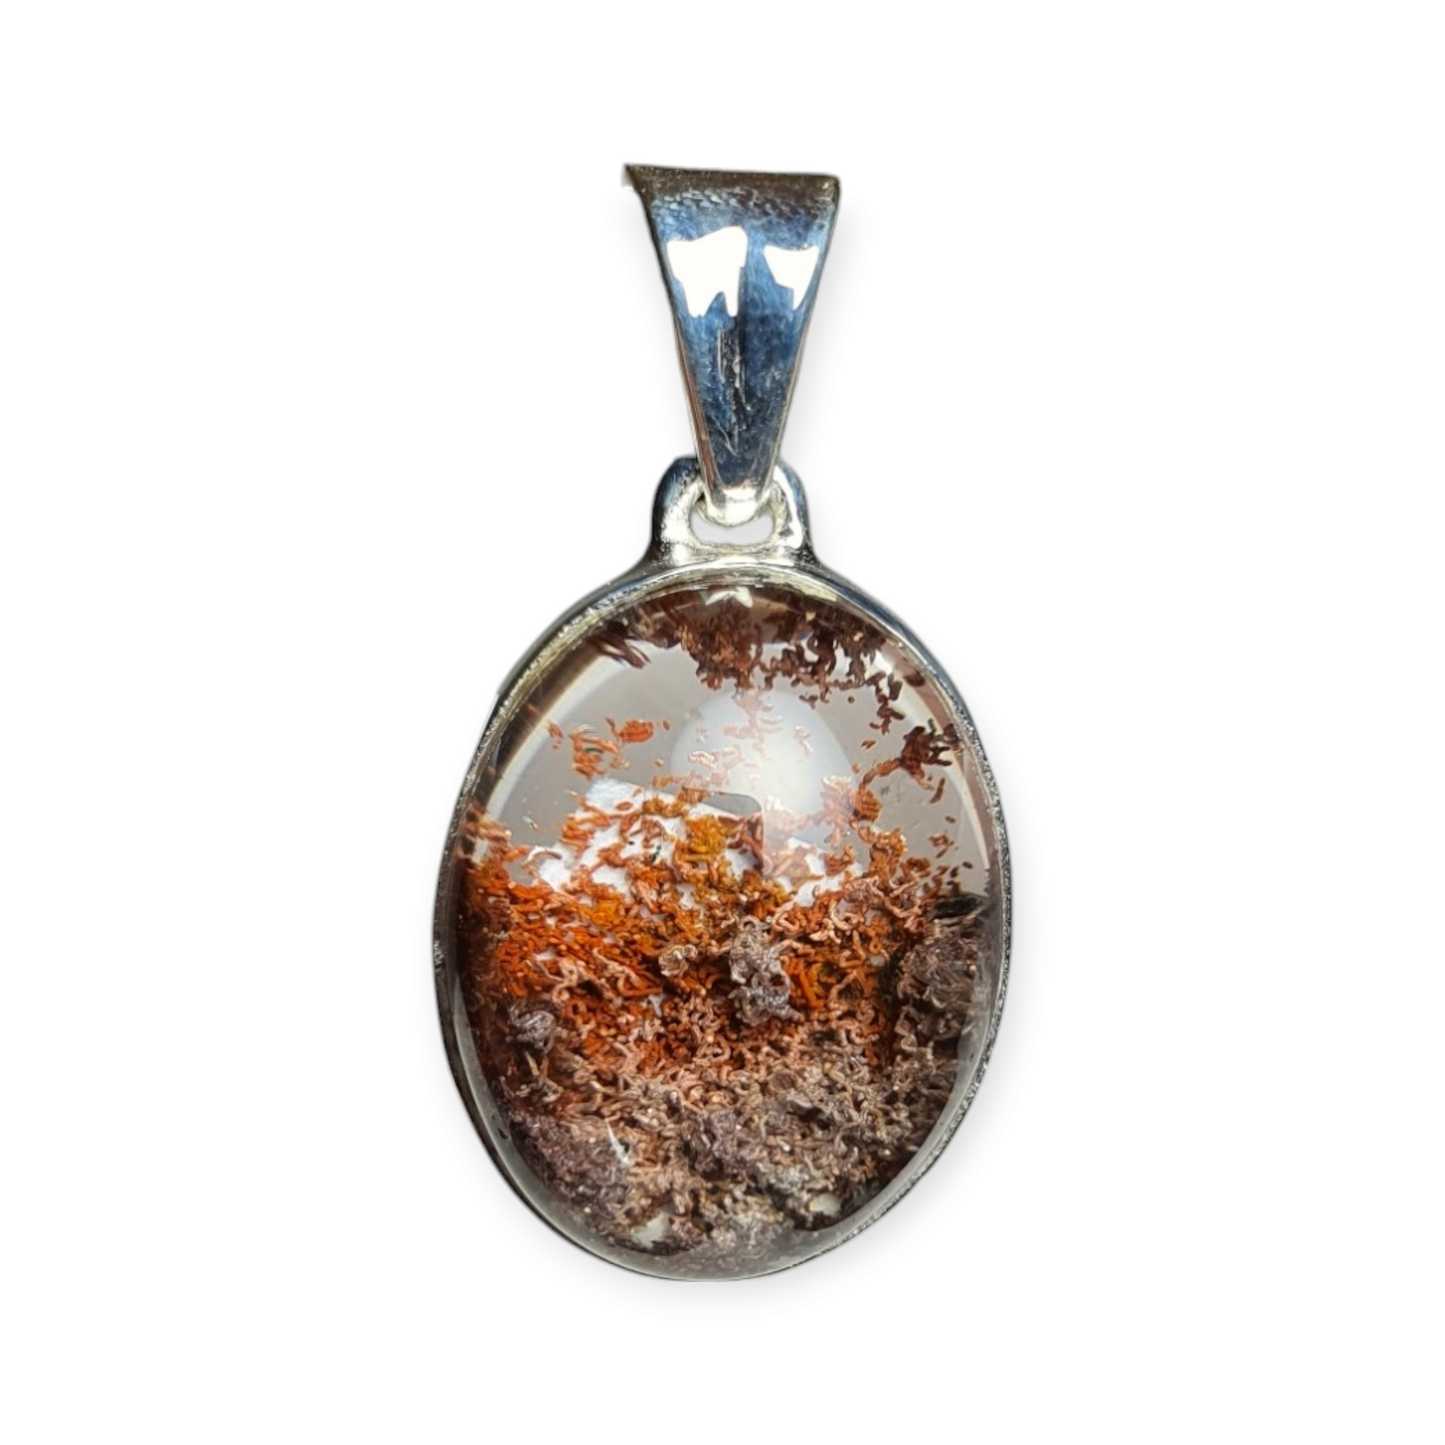 Crystals - Garden/Landscape Quartz (Lodelite) Pendant - Sterling Silver